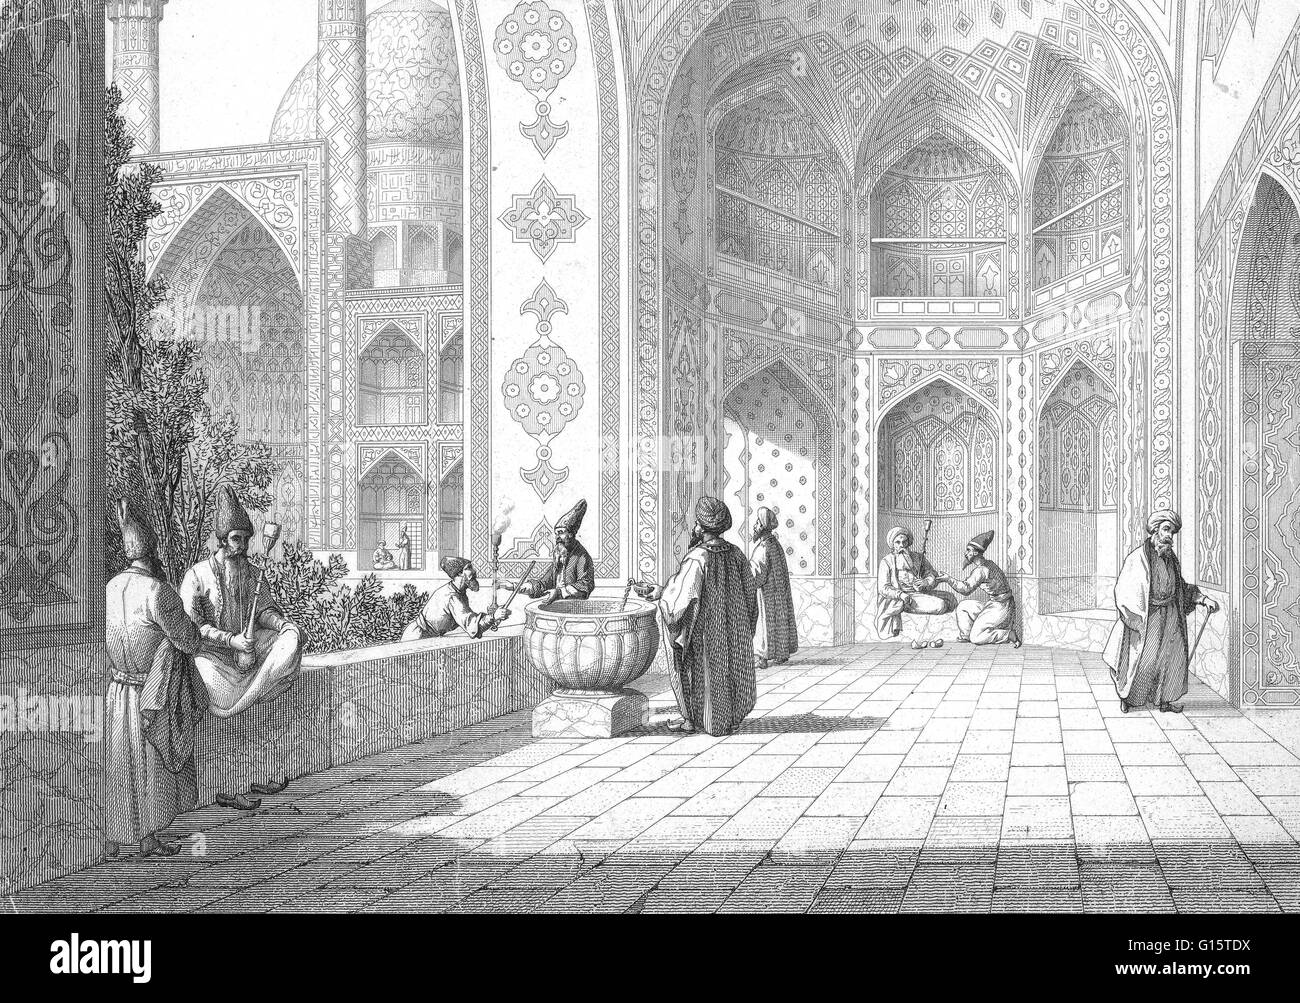 Gebaut von Shah ' Abbas im Jahre 1451 als Höhepunkt seiner Rekonstruktion von Isfahan, diese Moschee hat eine Reihe von wichtigen architektonischen Innovationen. Im Anschluss an die traditionelle iranische Moschee-Plan hat die Schah-Moschee ein Gericht umgeben durch eine zweistöckige Arkade auf fo Stockfoto